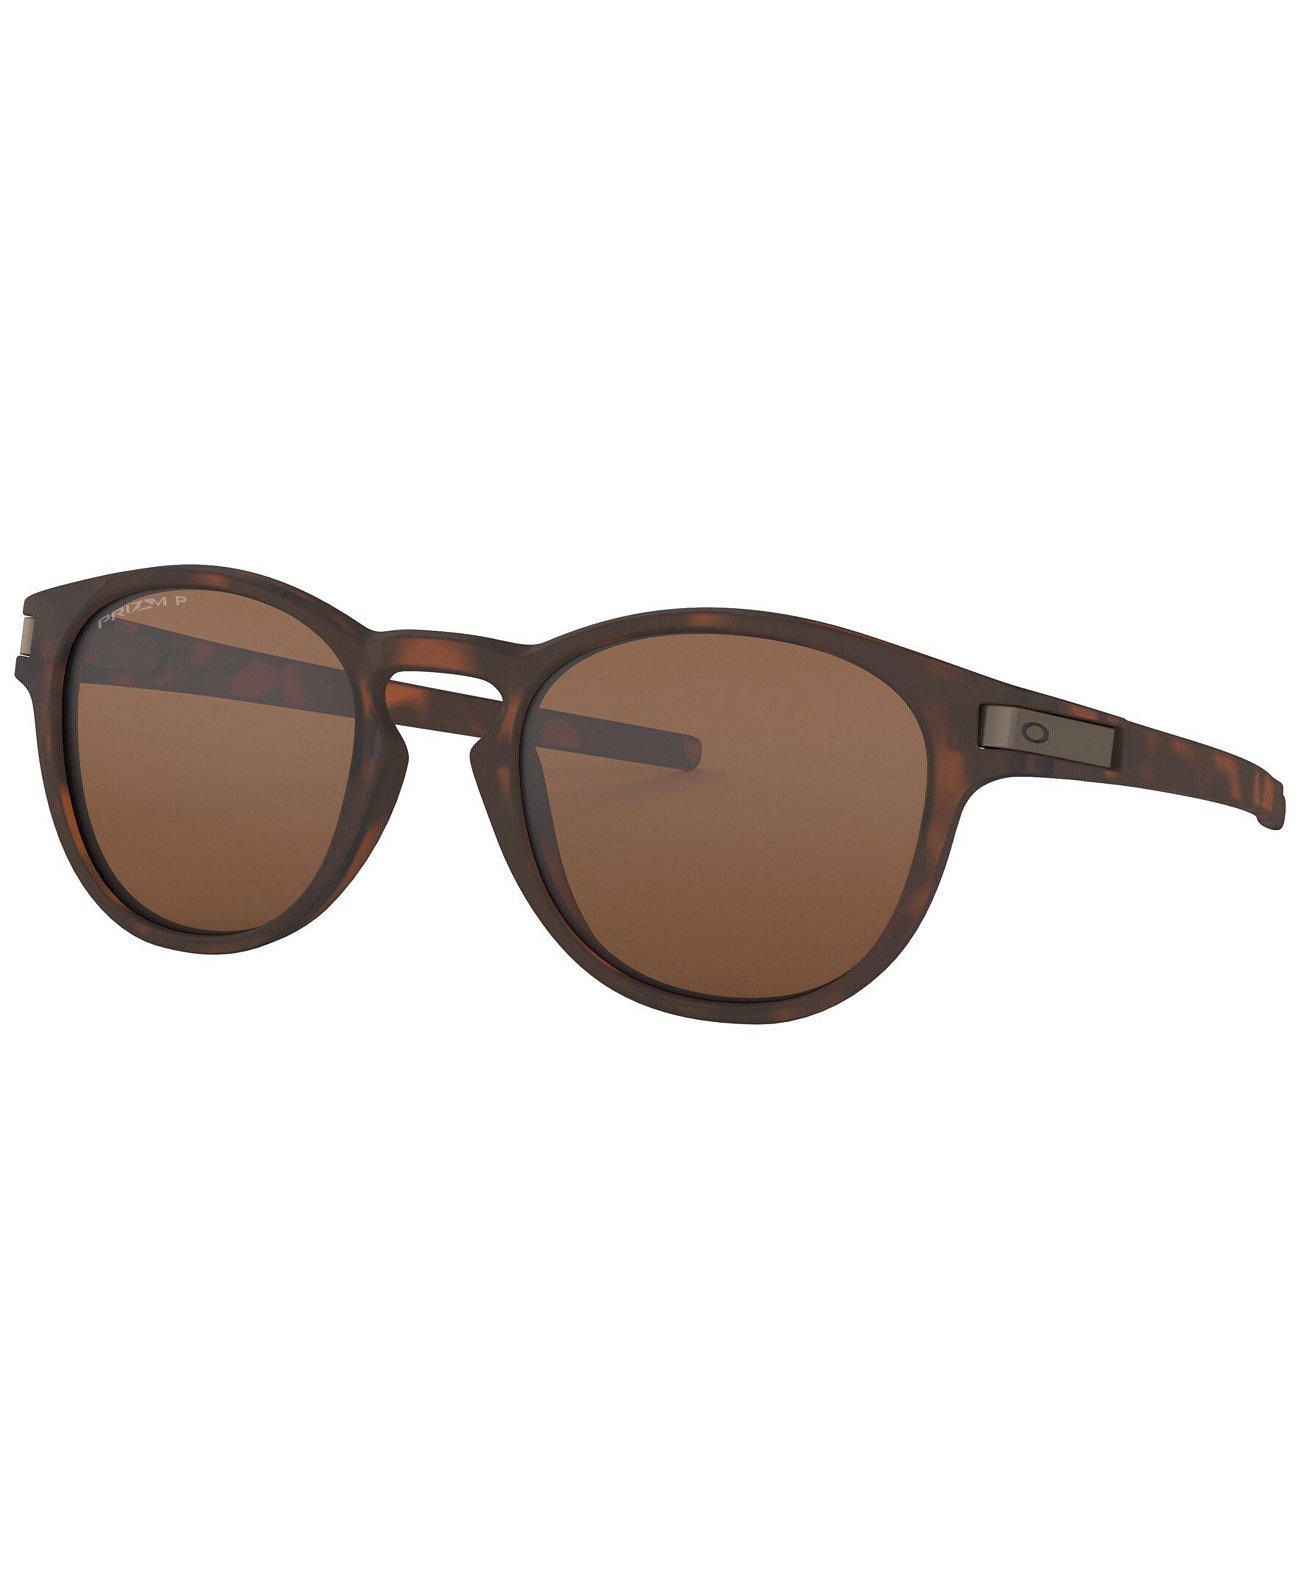 Мужские поляризованные солнцезащитные очки, OO9349 53 Oakley